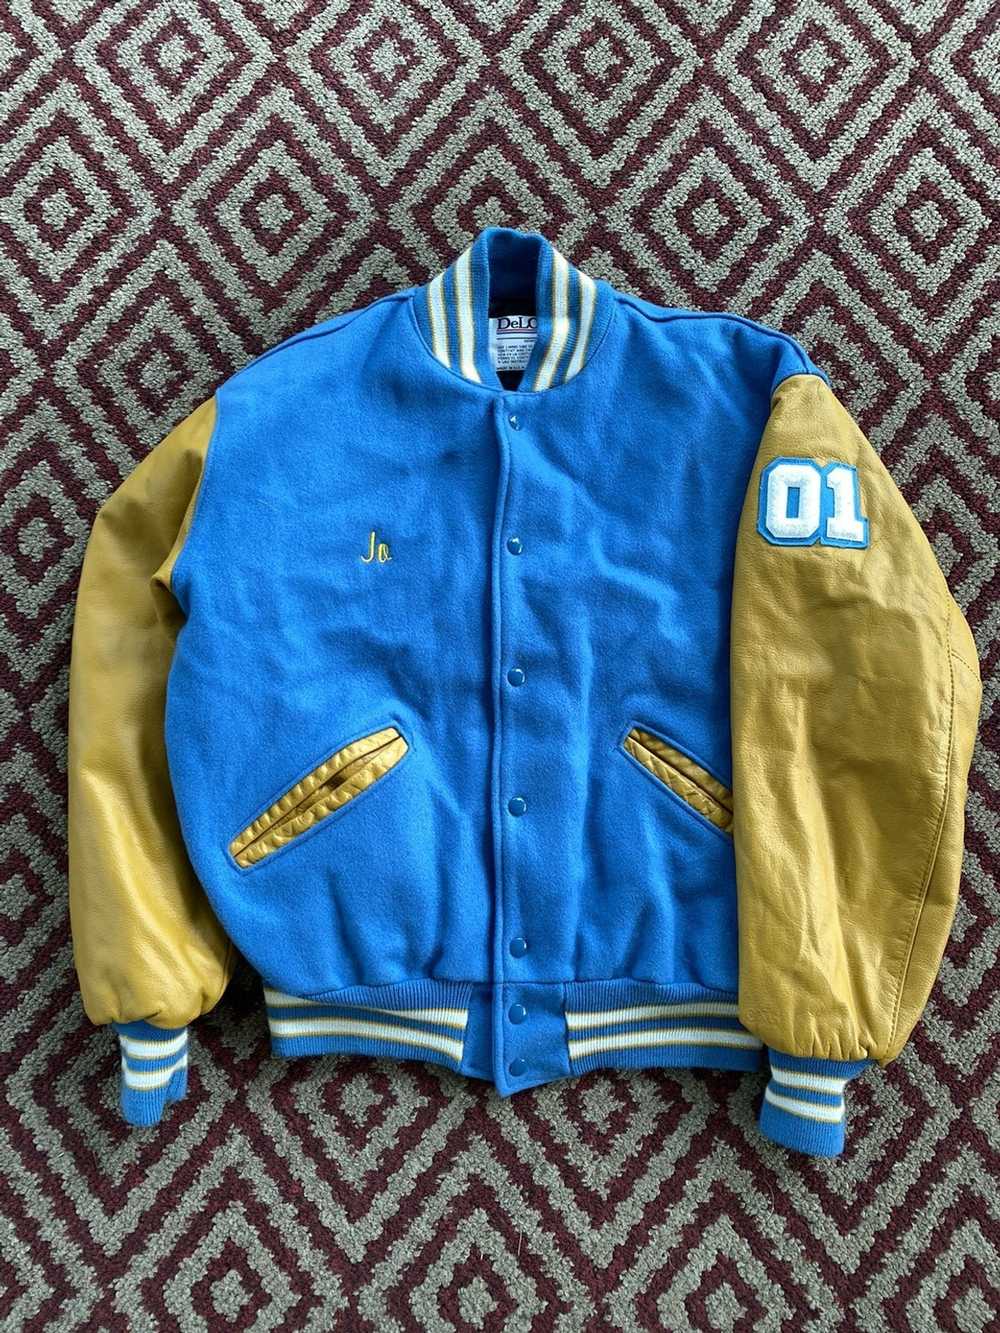 LA Kings Stain Varsity Jacket (XL) – VintageFolk